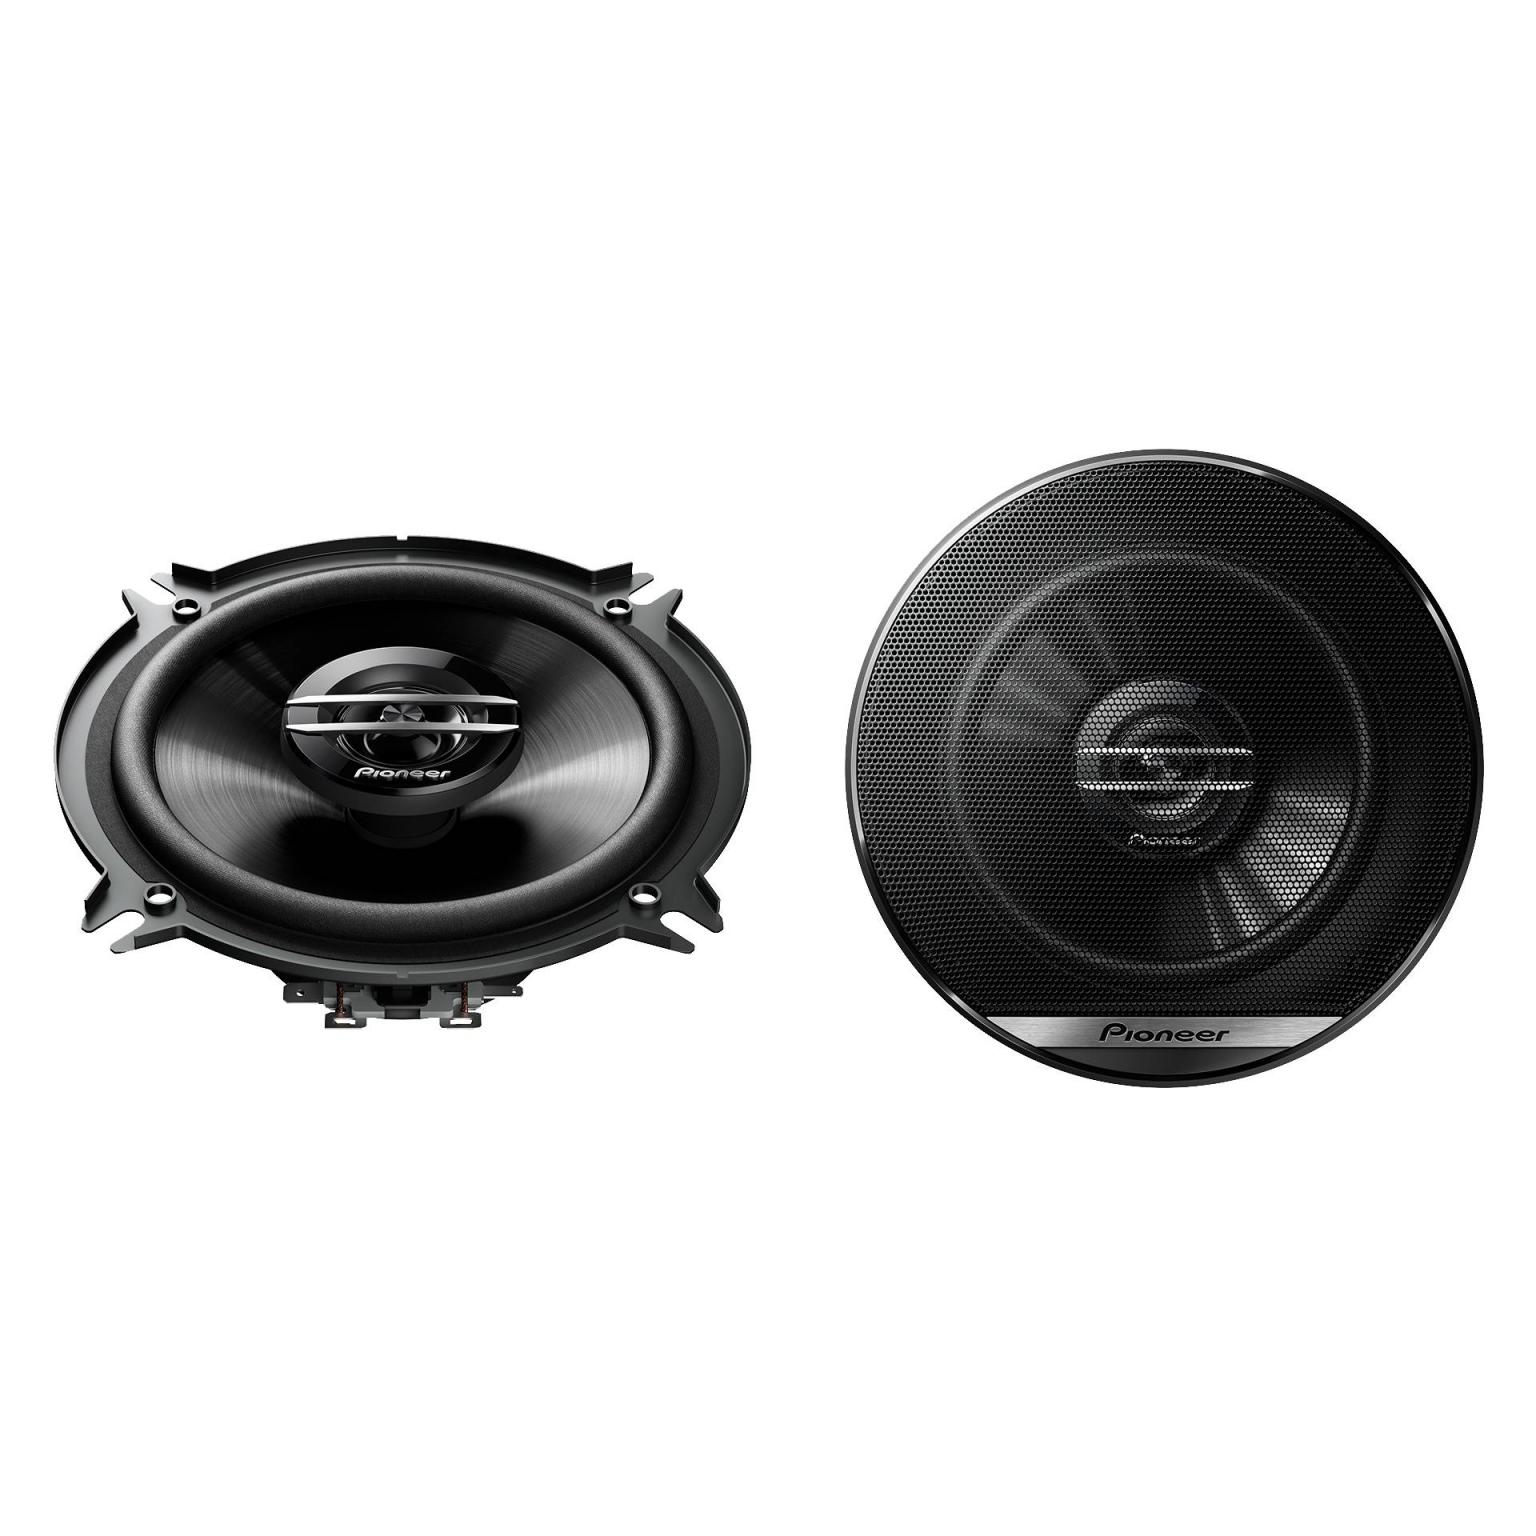 Fullrange speakers - 5 Inch - Pioneer